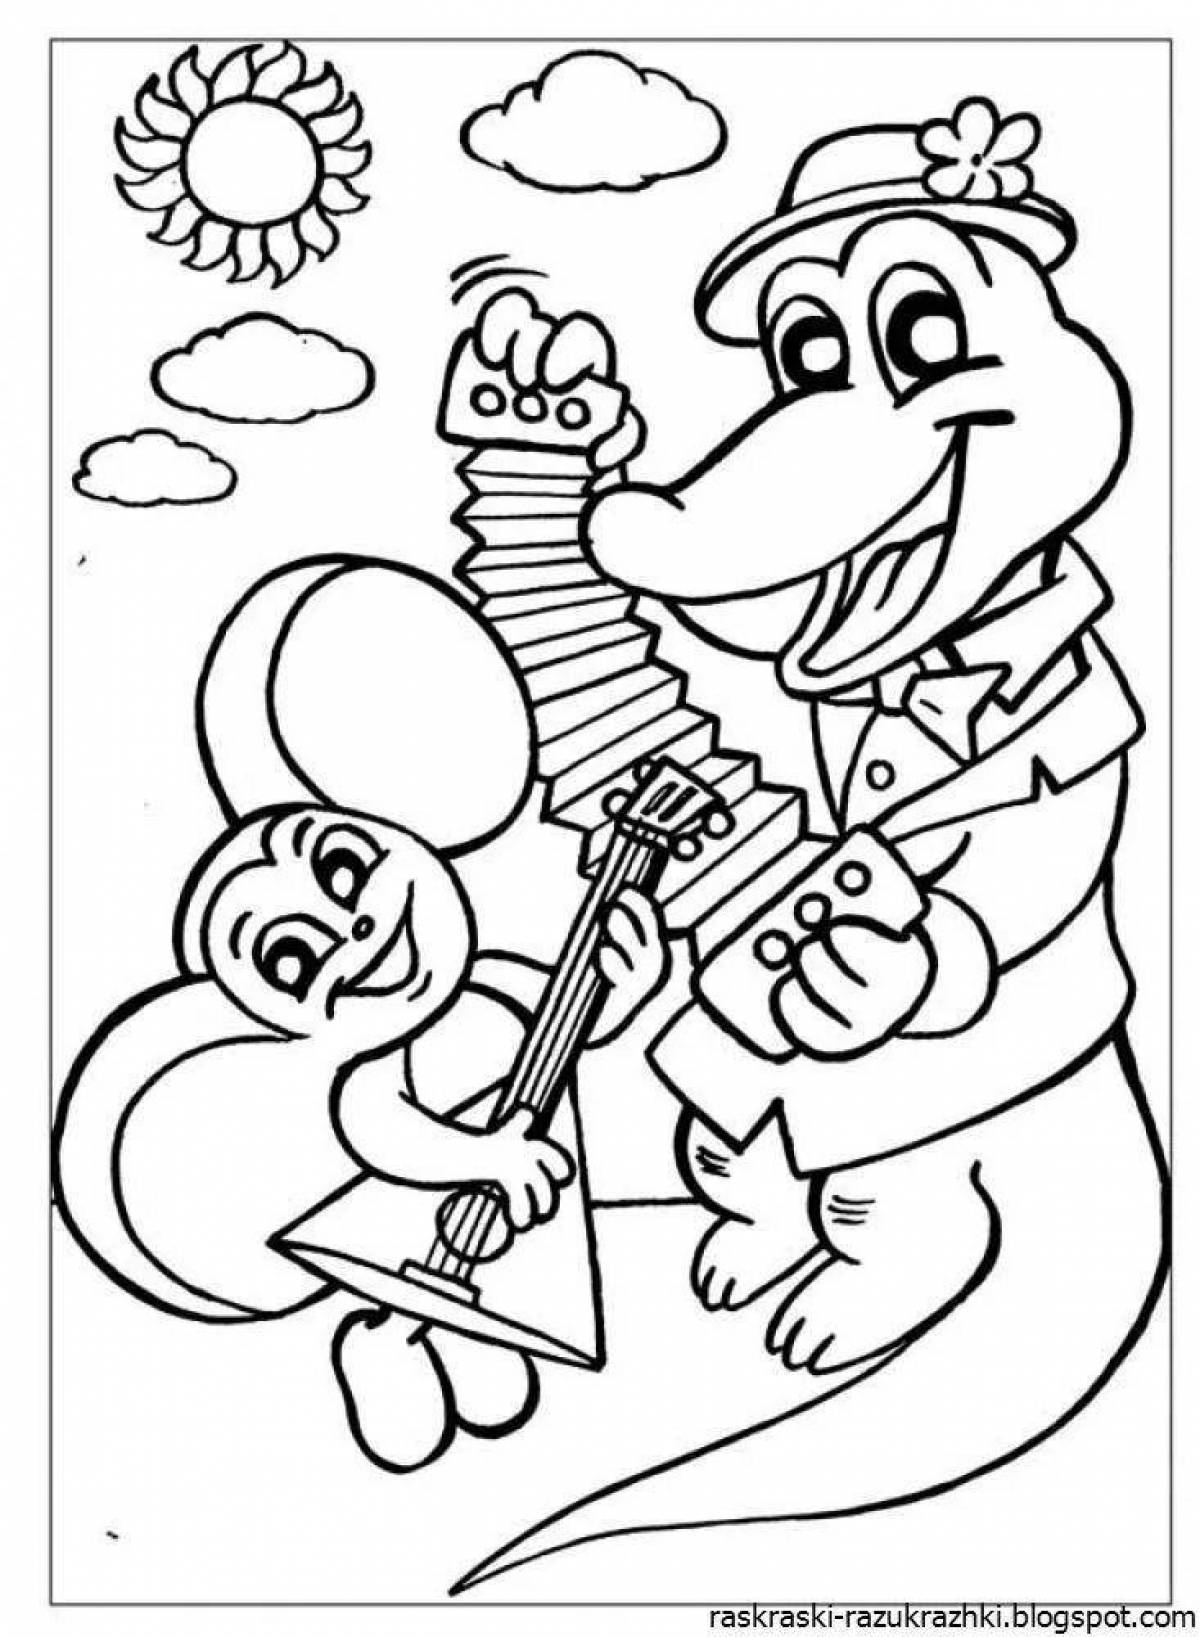 Веселая раскраска крокодил гена для детей